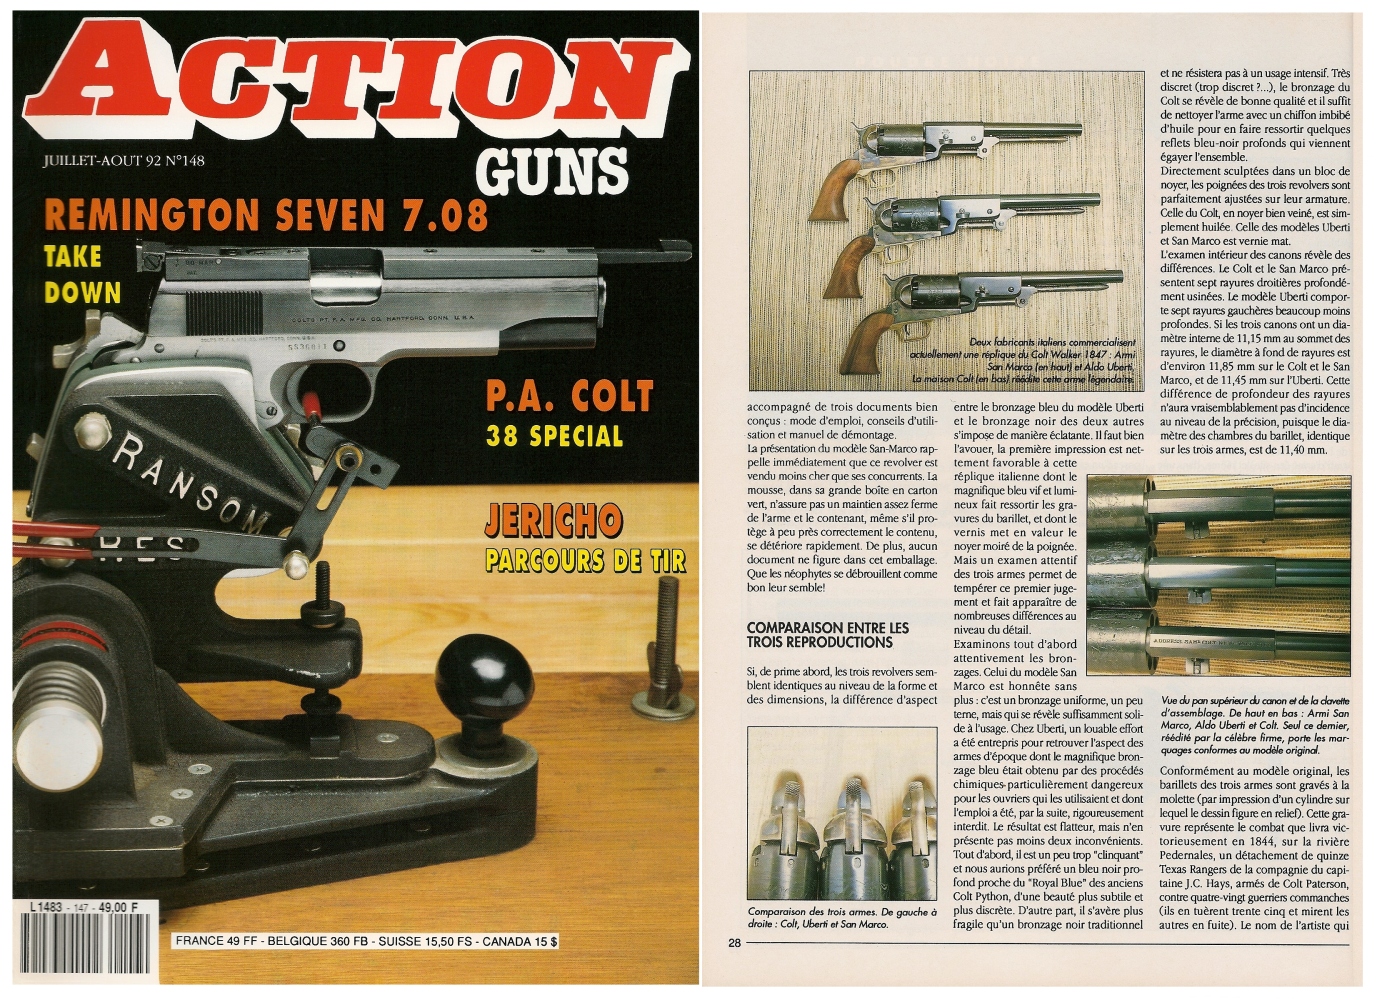 Le banc d’essai des répliques du Colt Walker 1847 a été publié sur 5 pages dans le magazine Action Guns n°148 (juillet-août 1992).